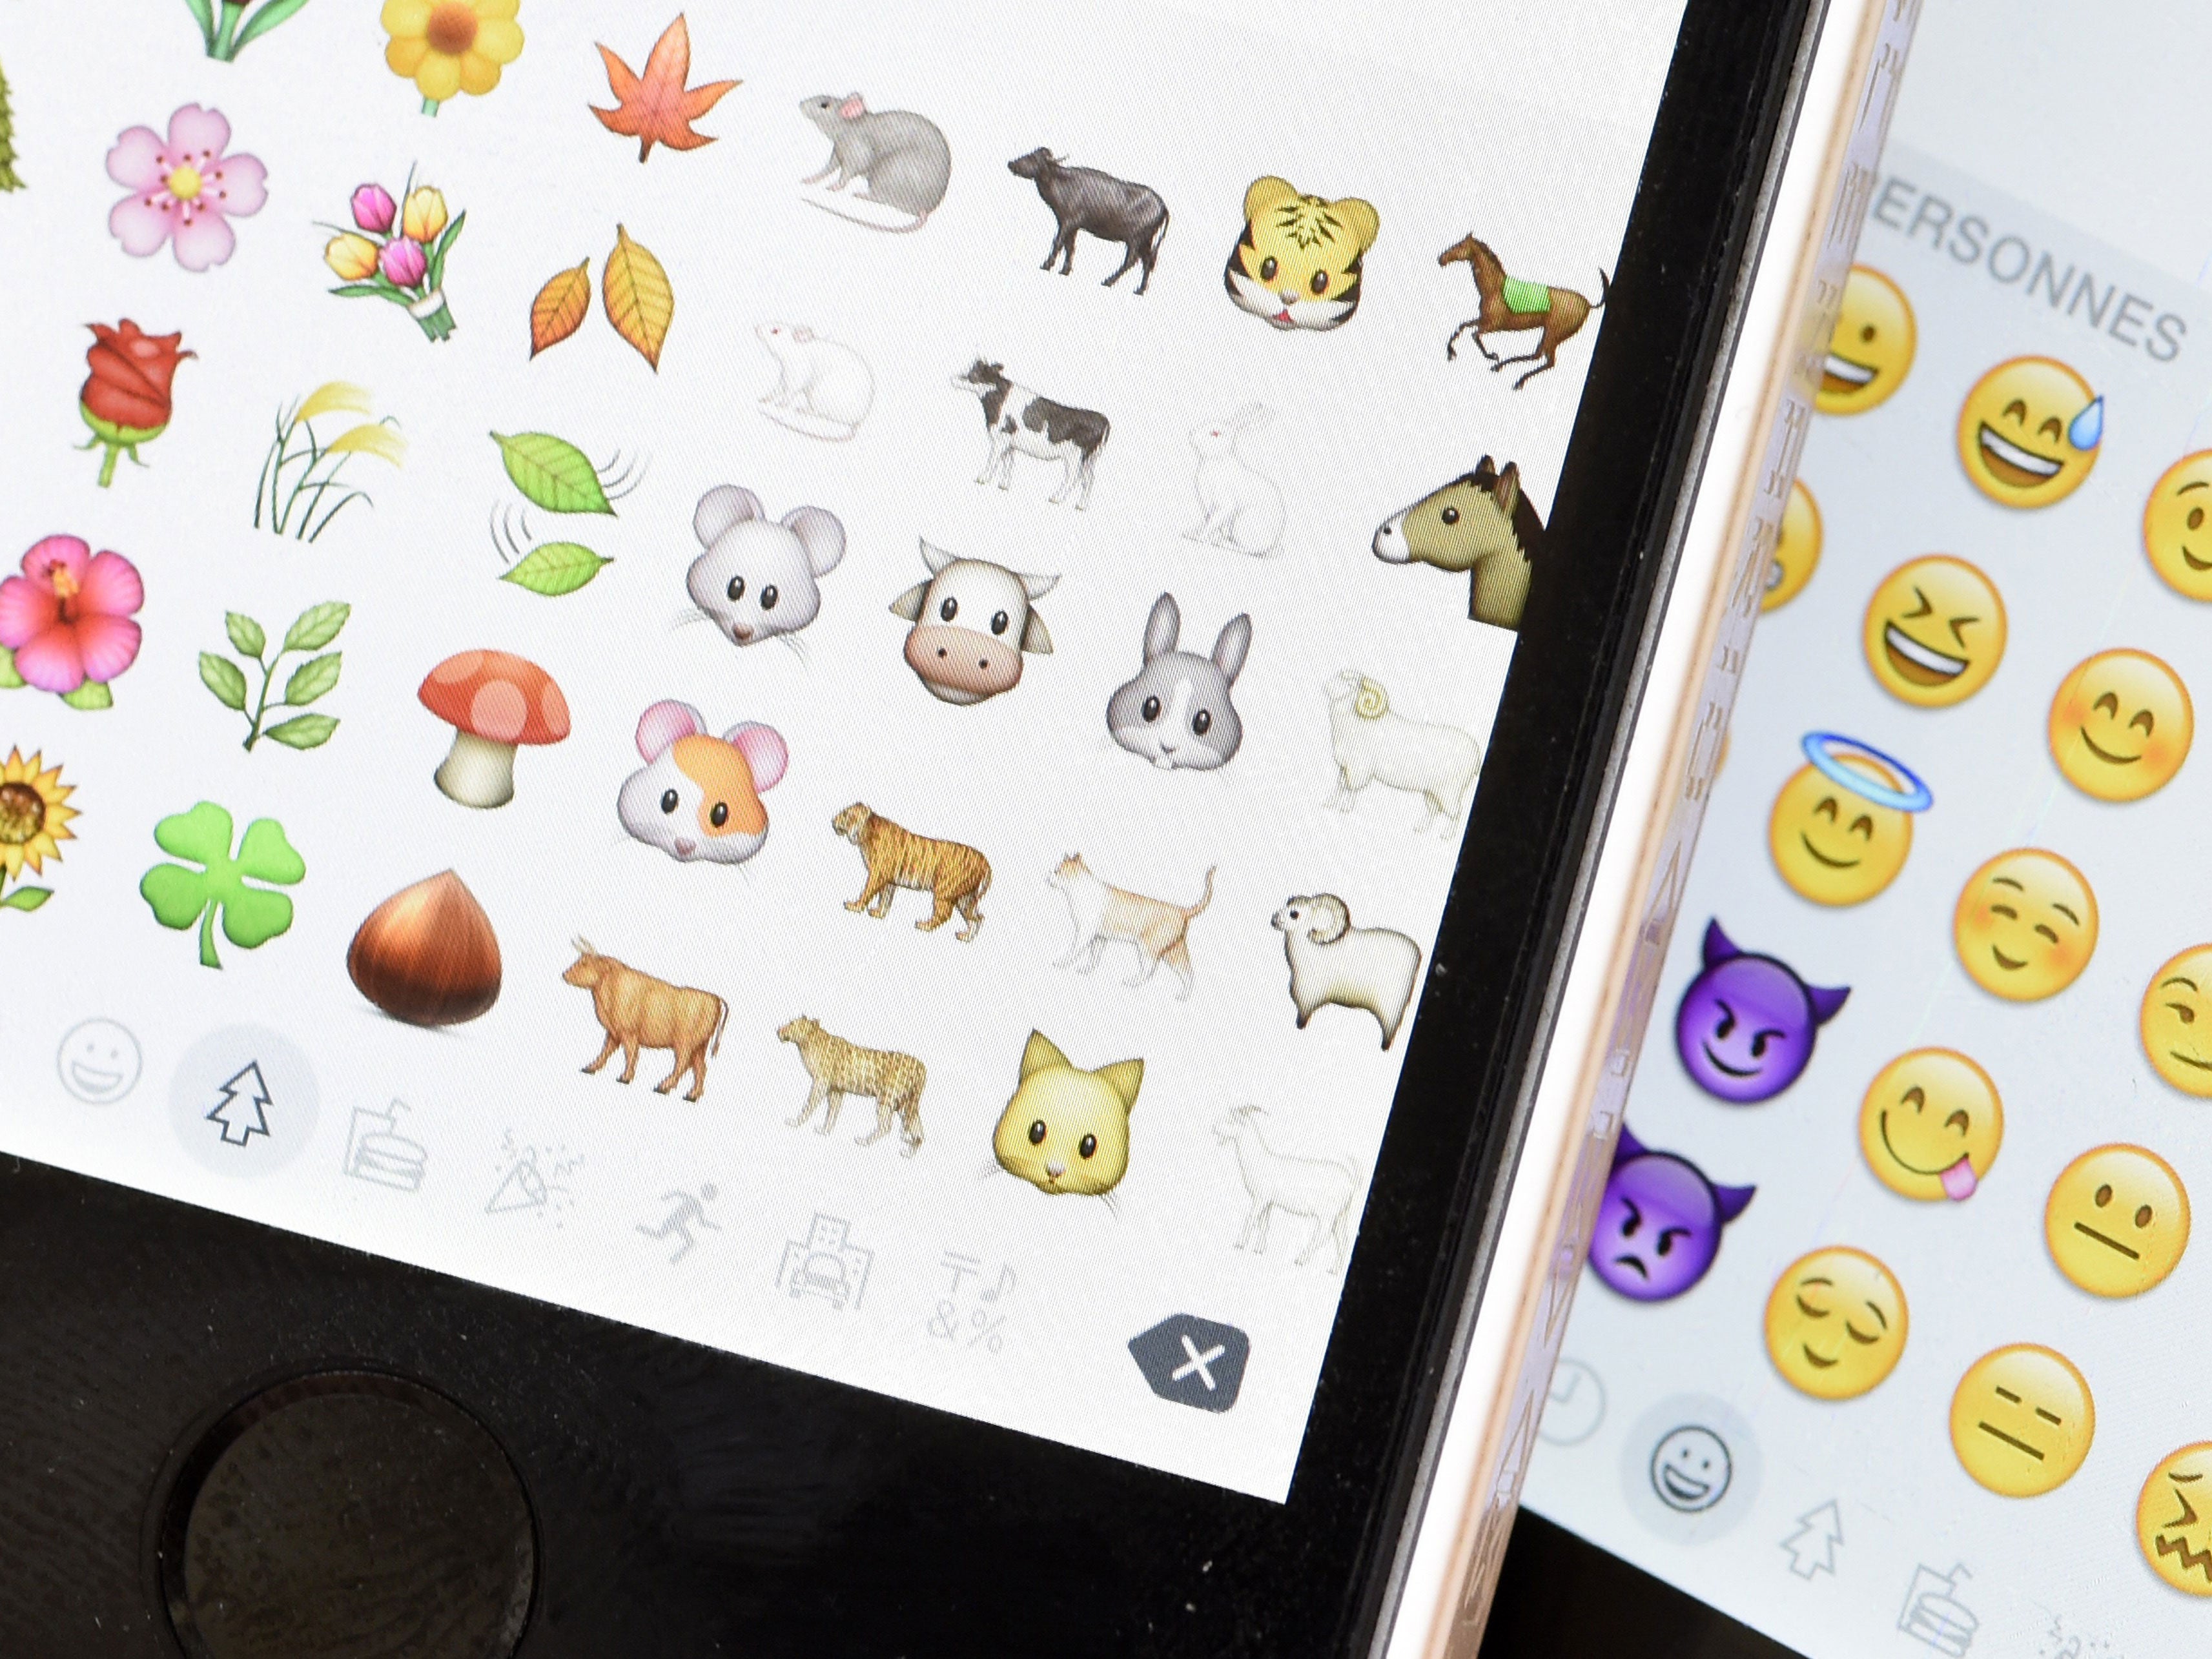 La RAE nos dice cómo debemos usar correctamente los emojis al escribir